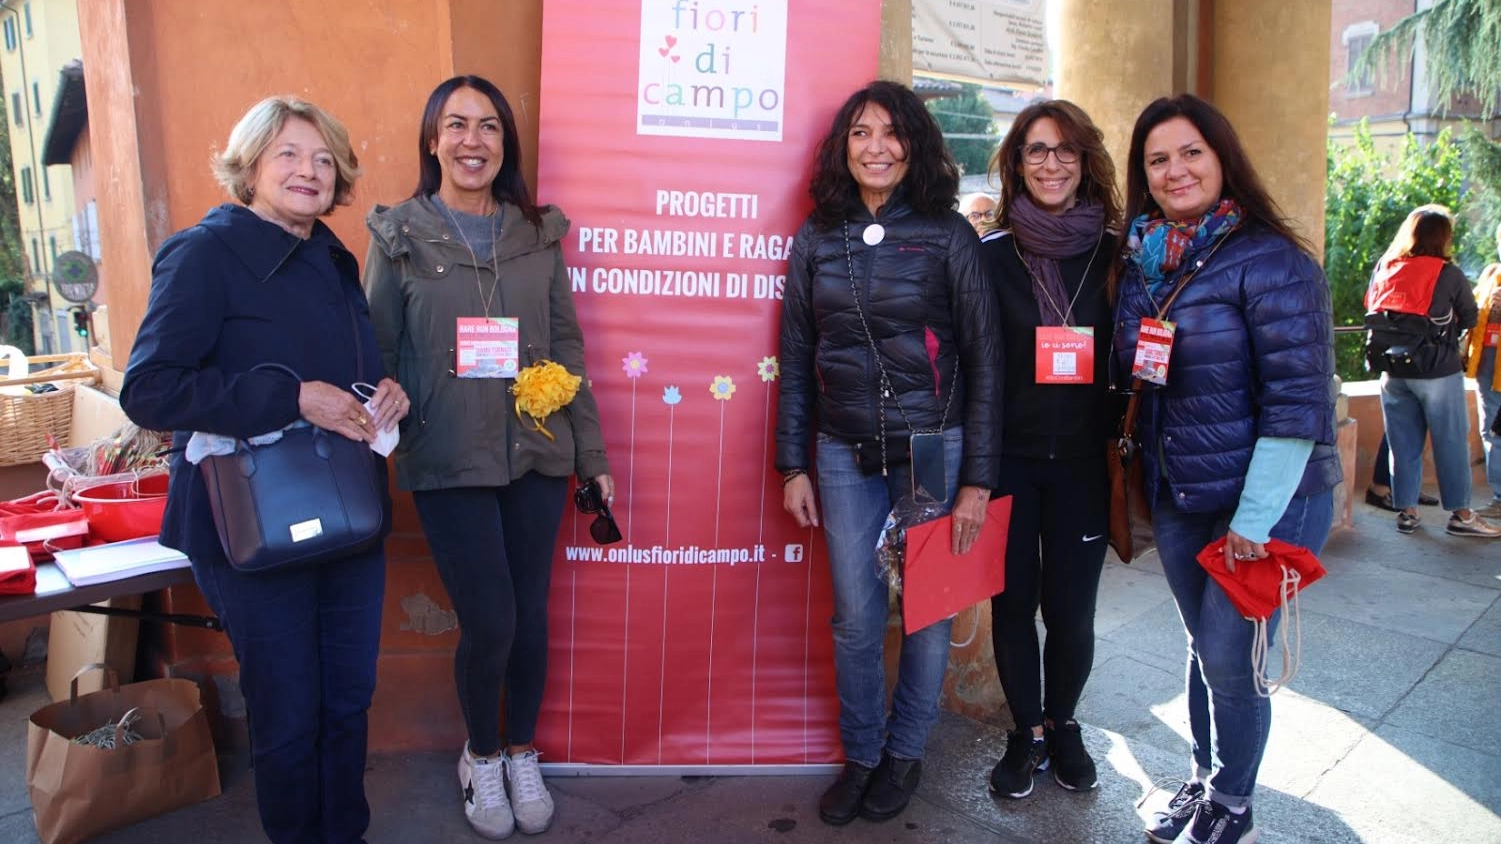 L’evento di Fiori di Campo, domenica 17 marzo, a San Luca per sostenere il Centro pediatrico del Sant’Orsola